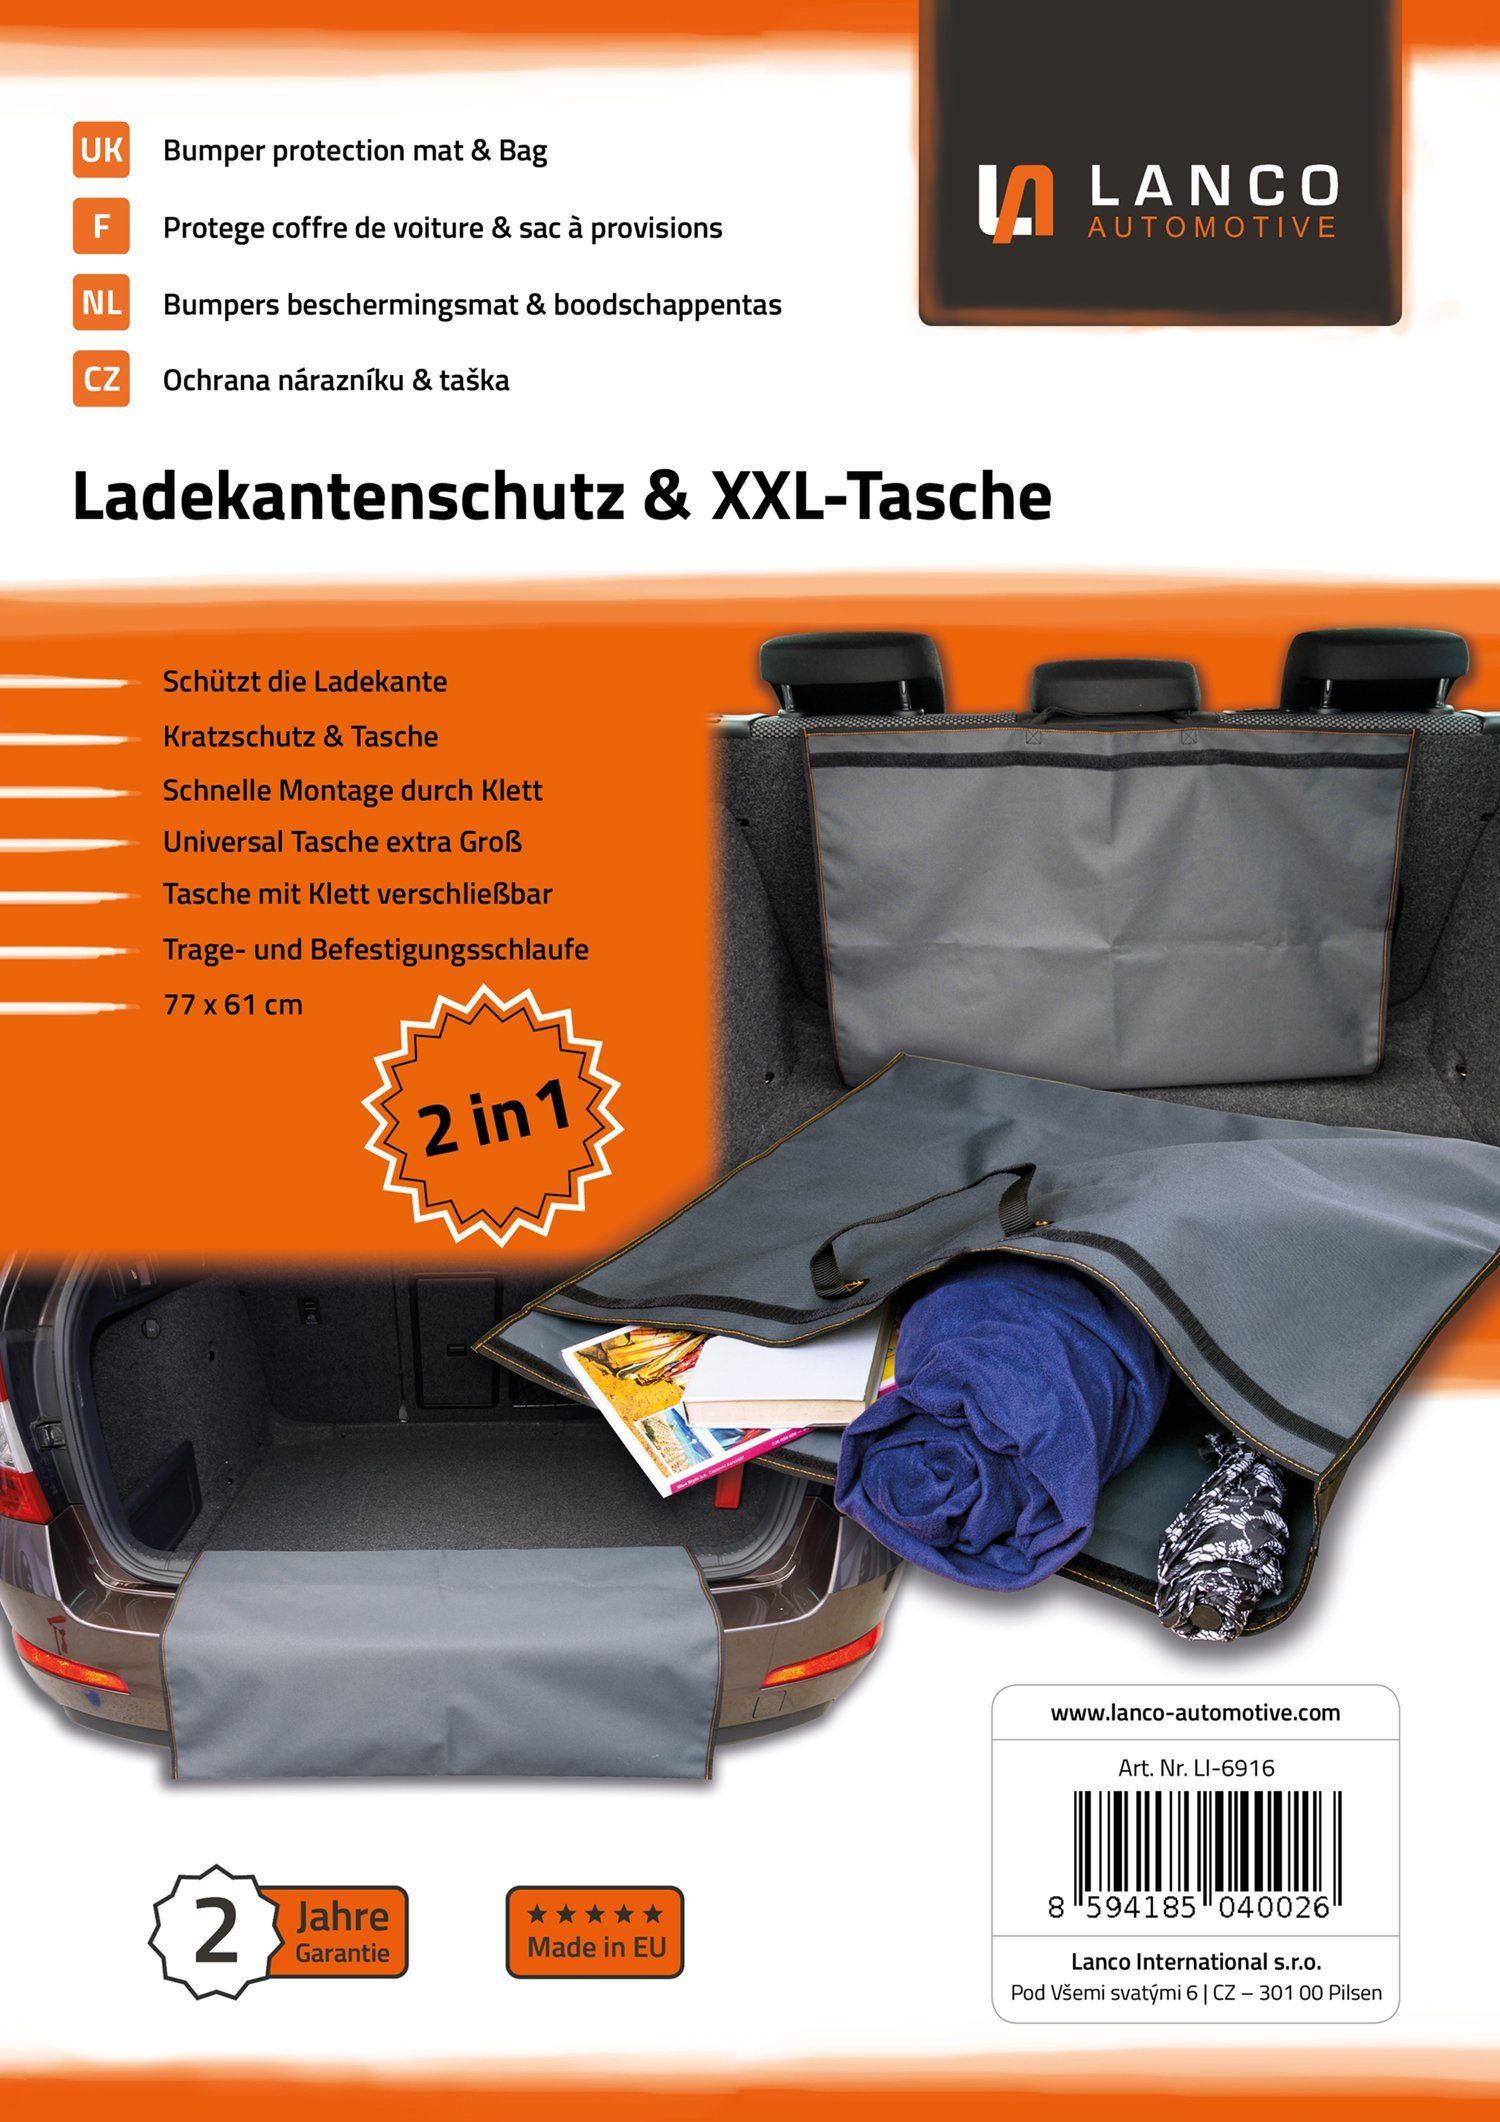 Made Qualität 61 Automotive Tasche, und [77 x LANCO Ladekantenschutz cm, in EU] Premium